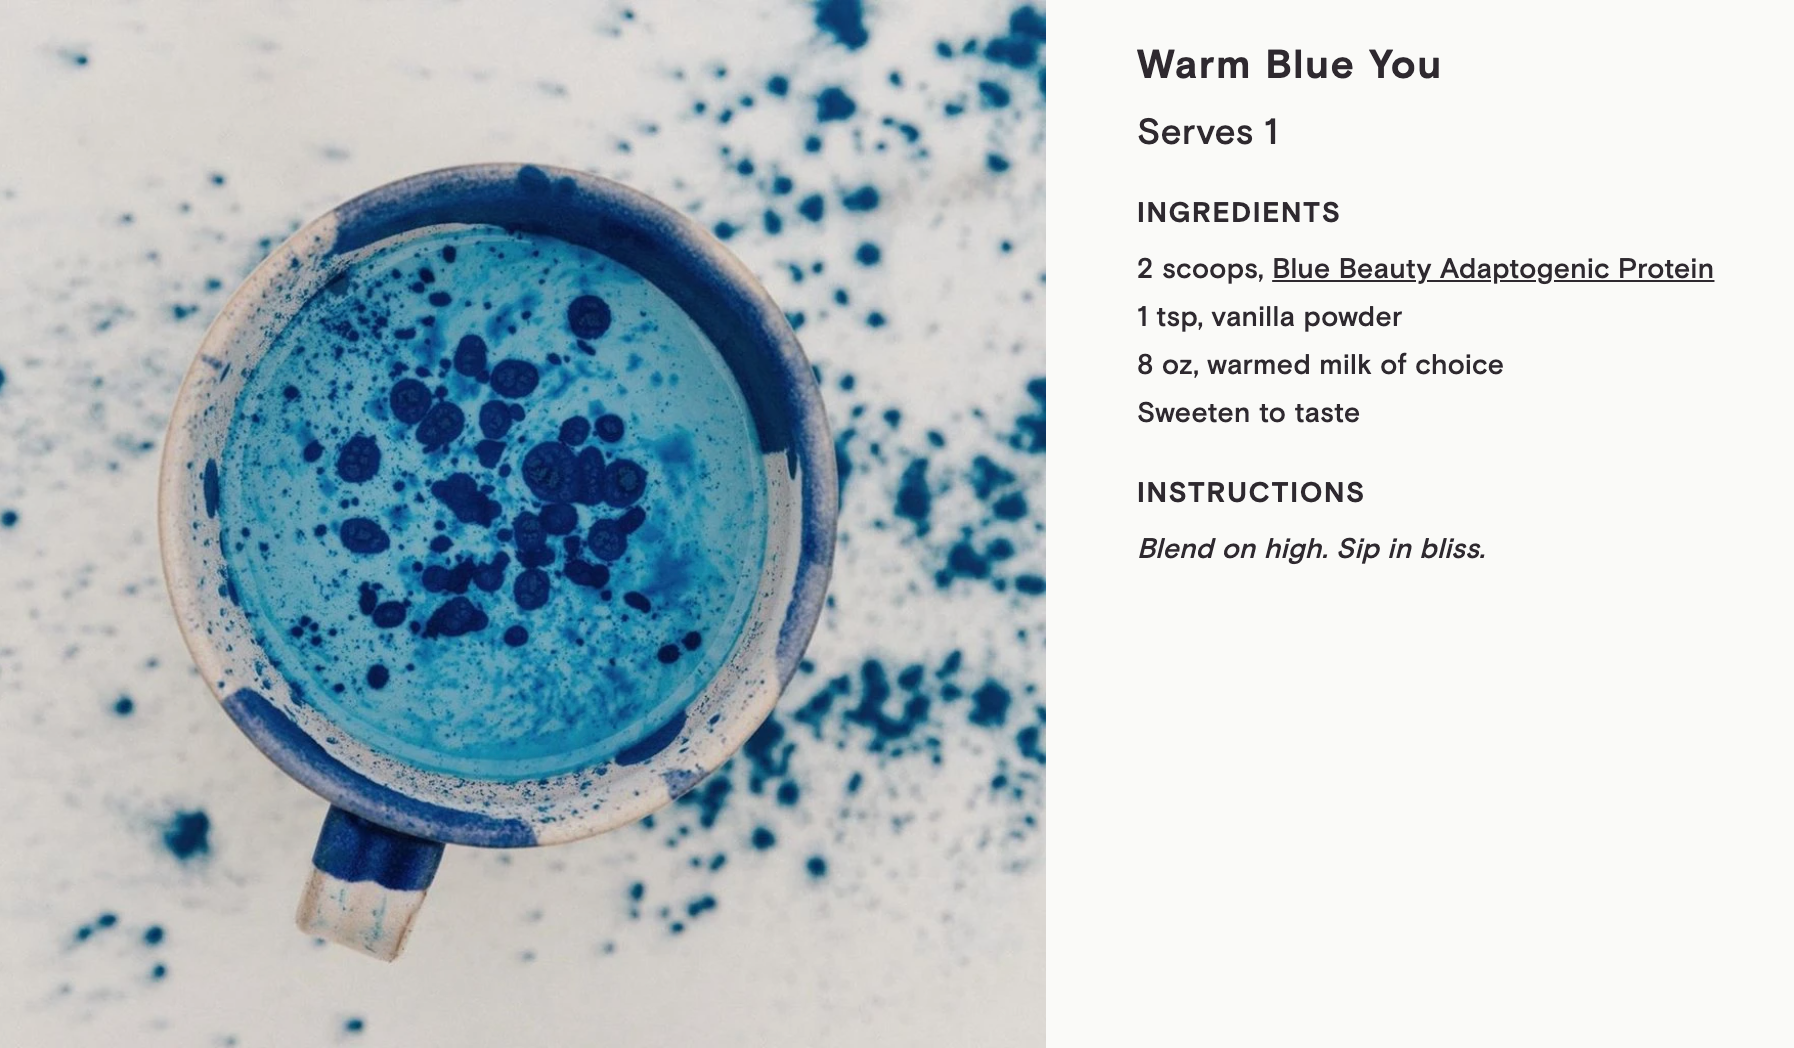 Moon Juice Blue Beauty Warm Blue You Recipe